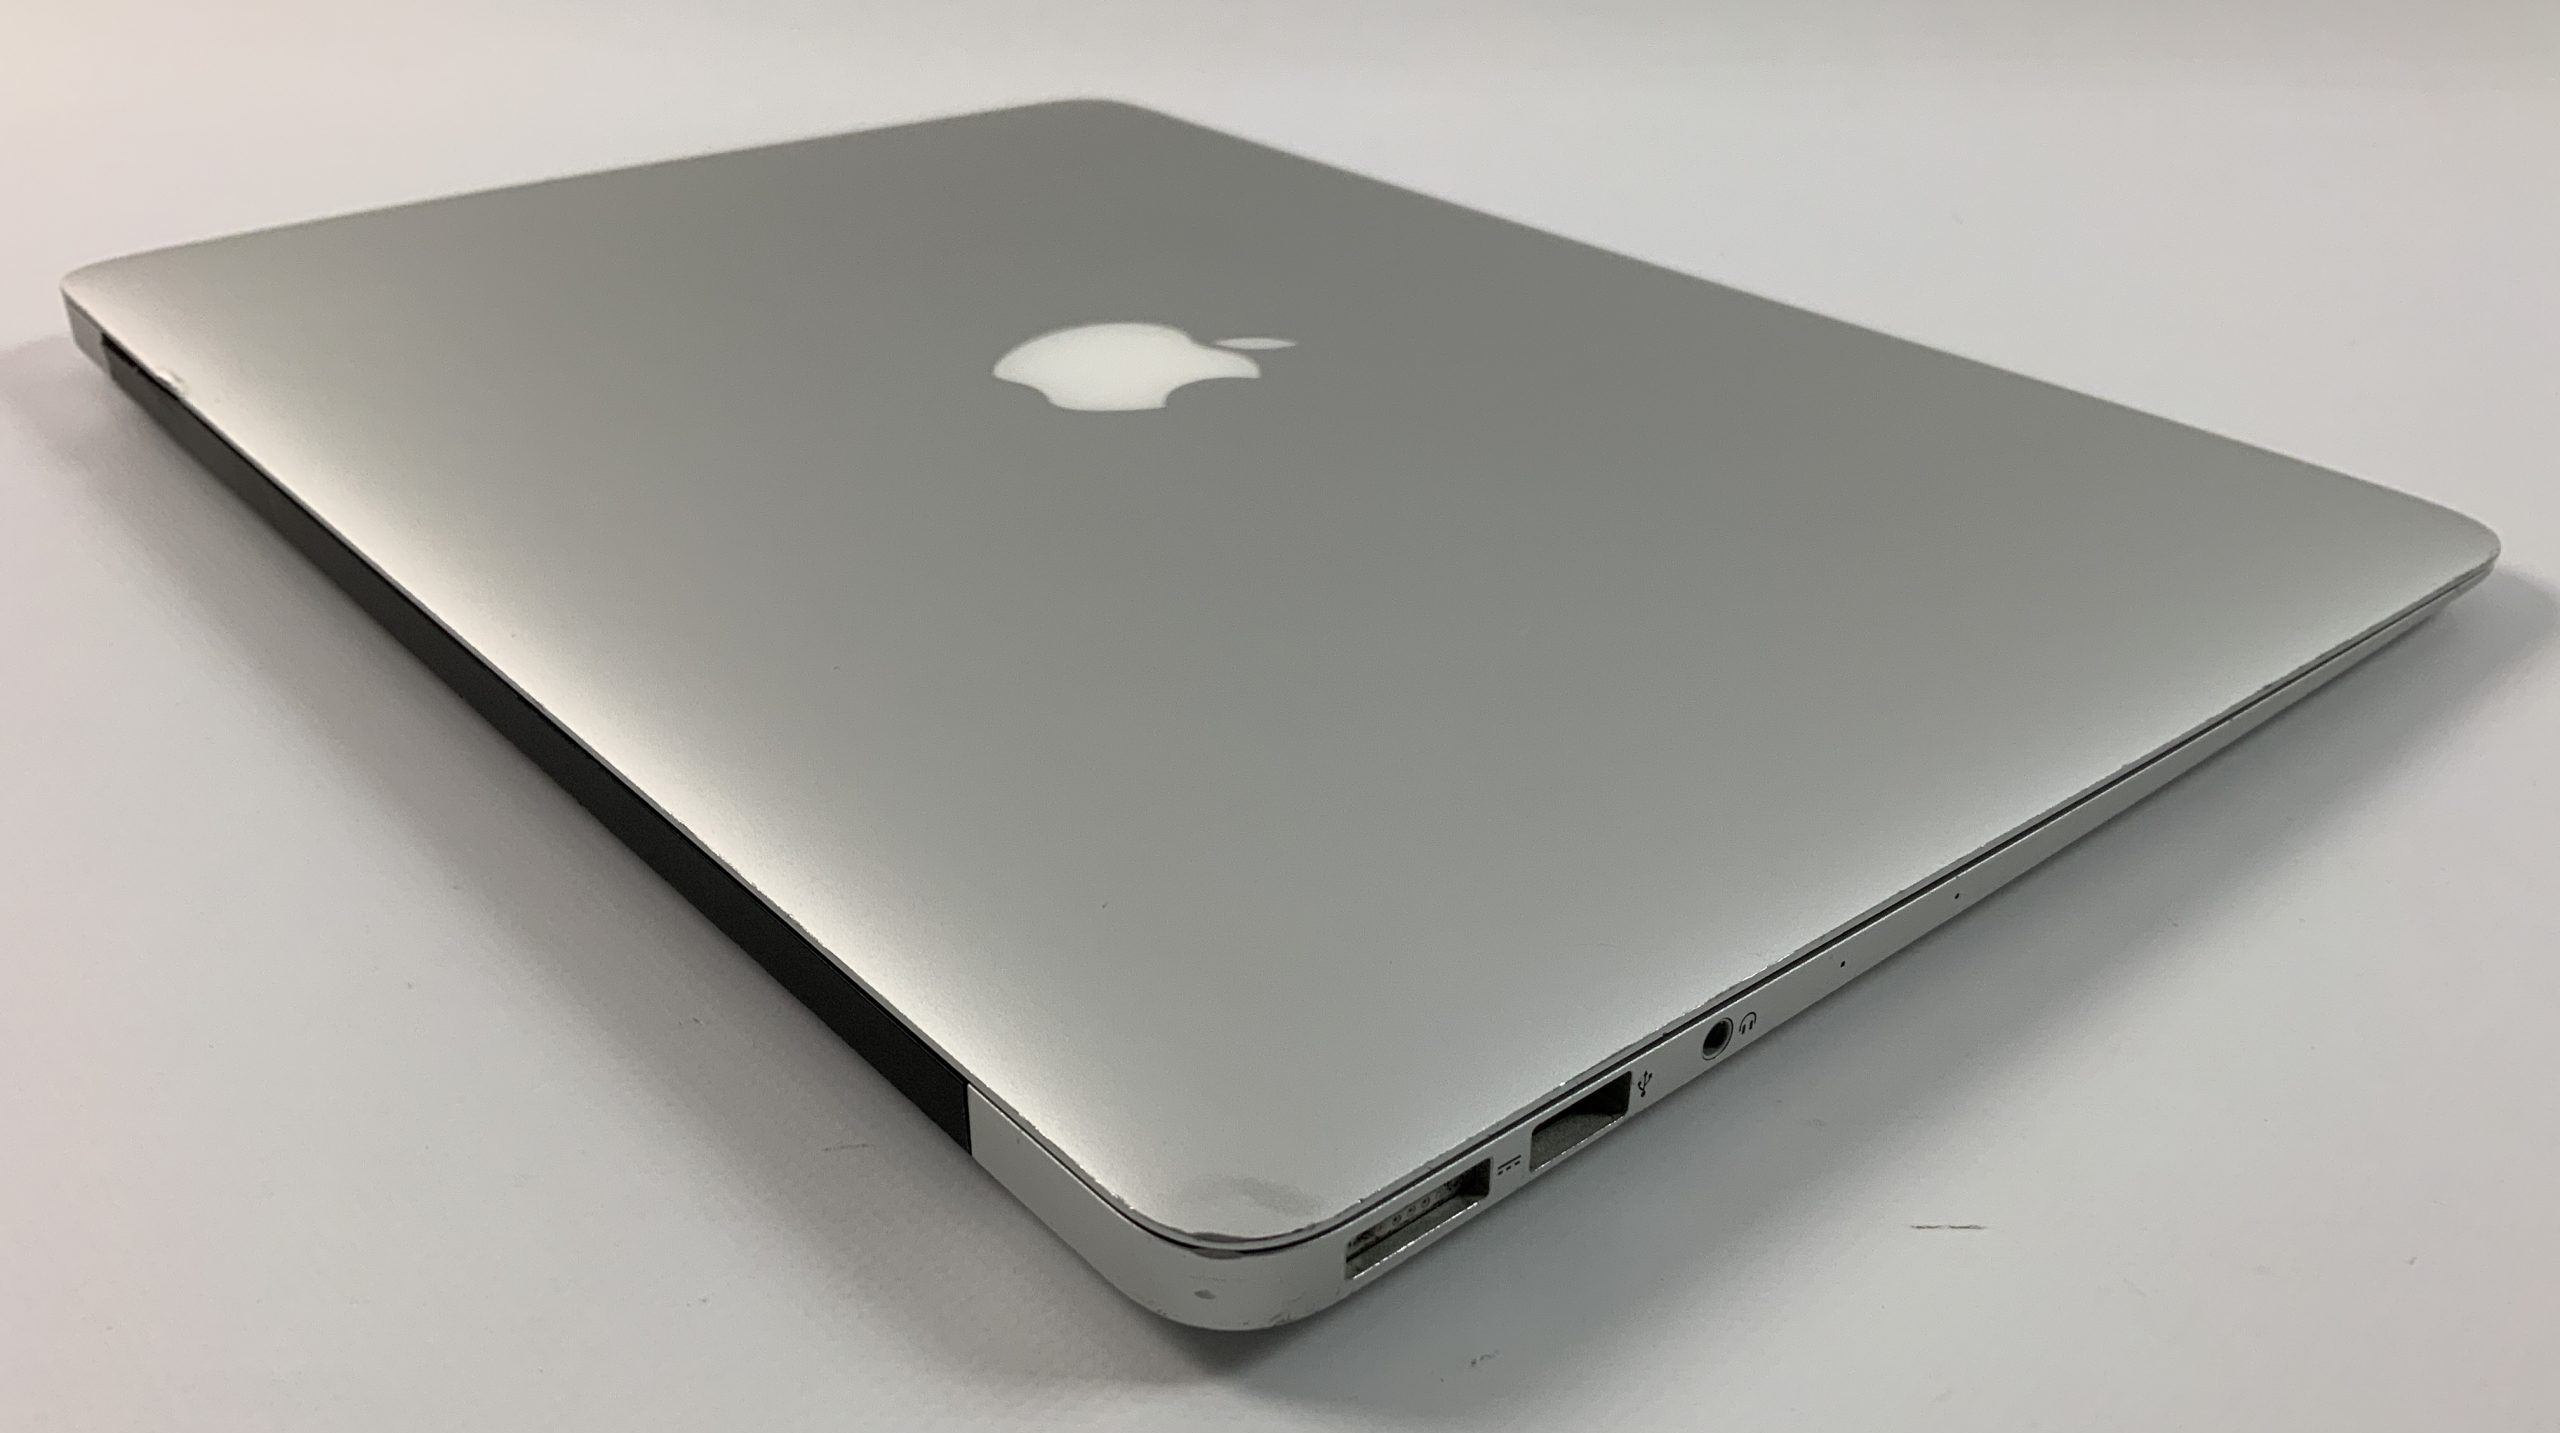 MacBook Air 13" Mid 2017 (Intel Core i5 1.8 GHz 8 GB RAM 256 GB SSD), Intel Core i5 1.8 GHz, 8 GB RAM, 256 GB SSD, Bild 5